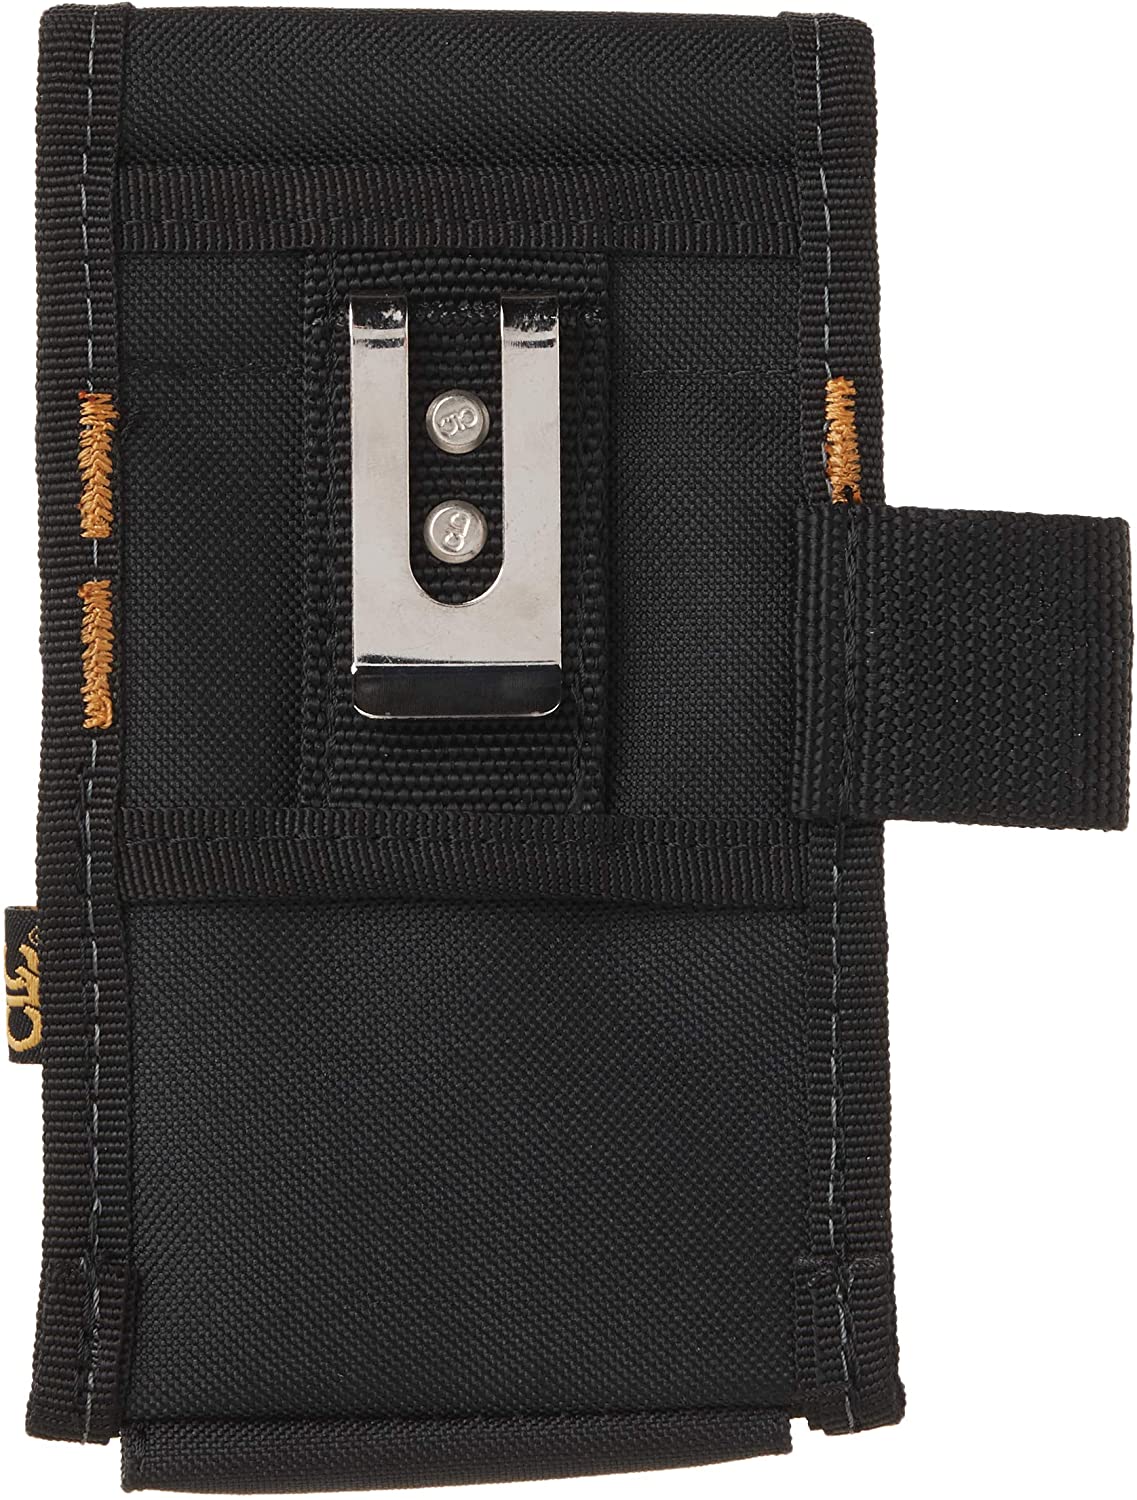 Funda para herramientas 4 bolsillos clip para cinturón para ancho máximo de cinturón de 2 1/2 in cierre de velcro